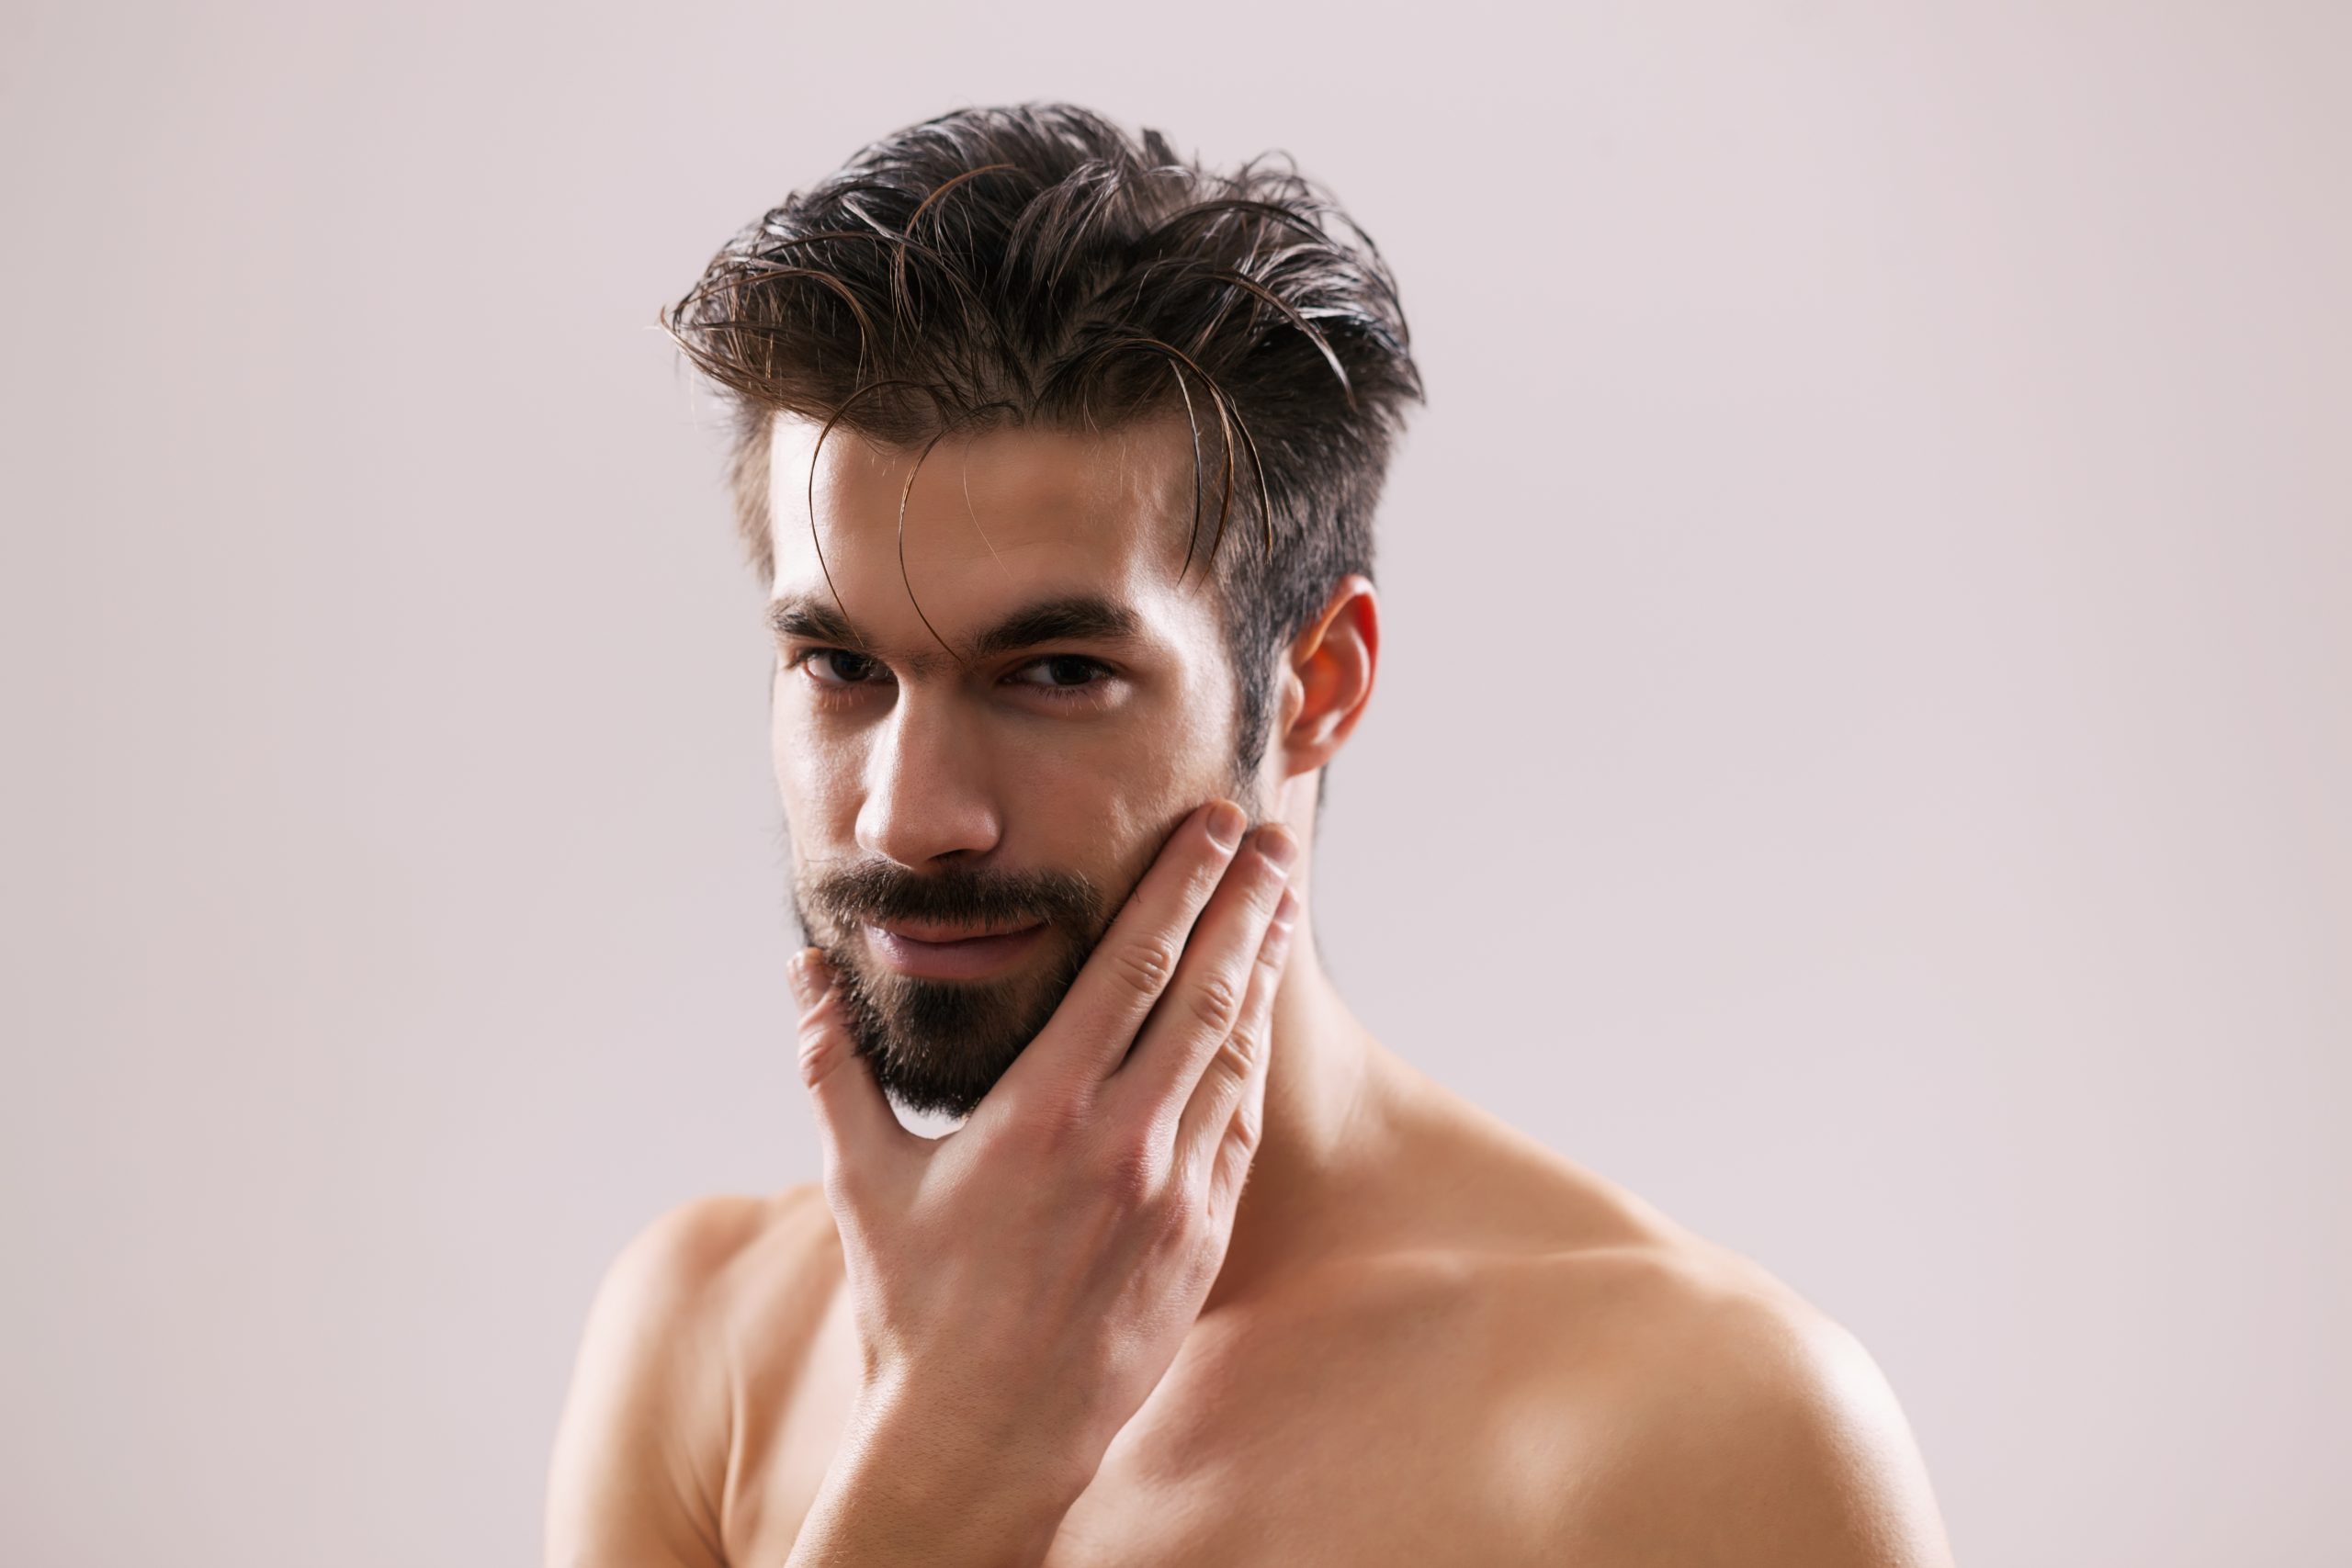 Co wchodzi w zakres systematycznej pielęgnacji brody?